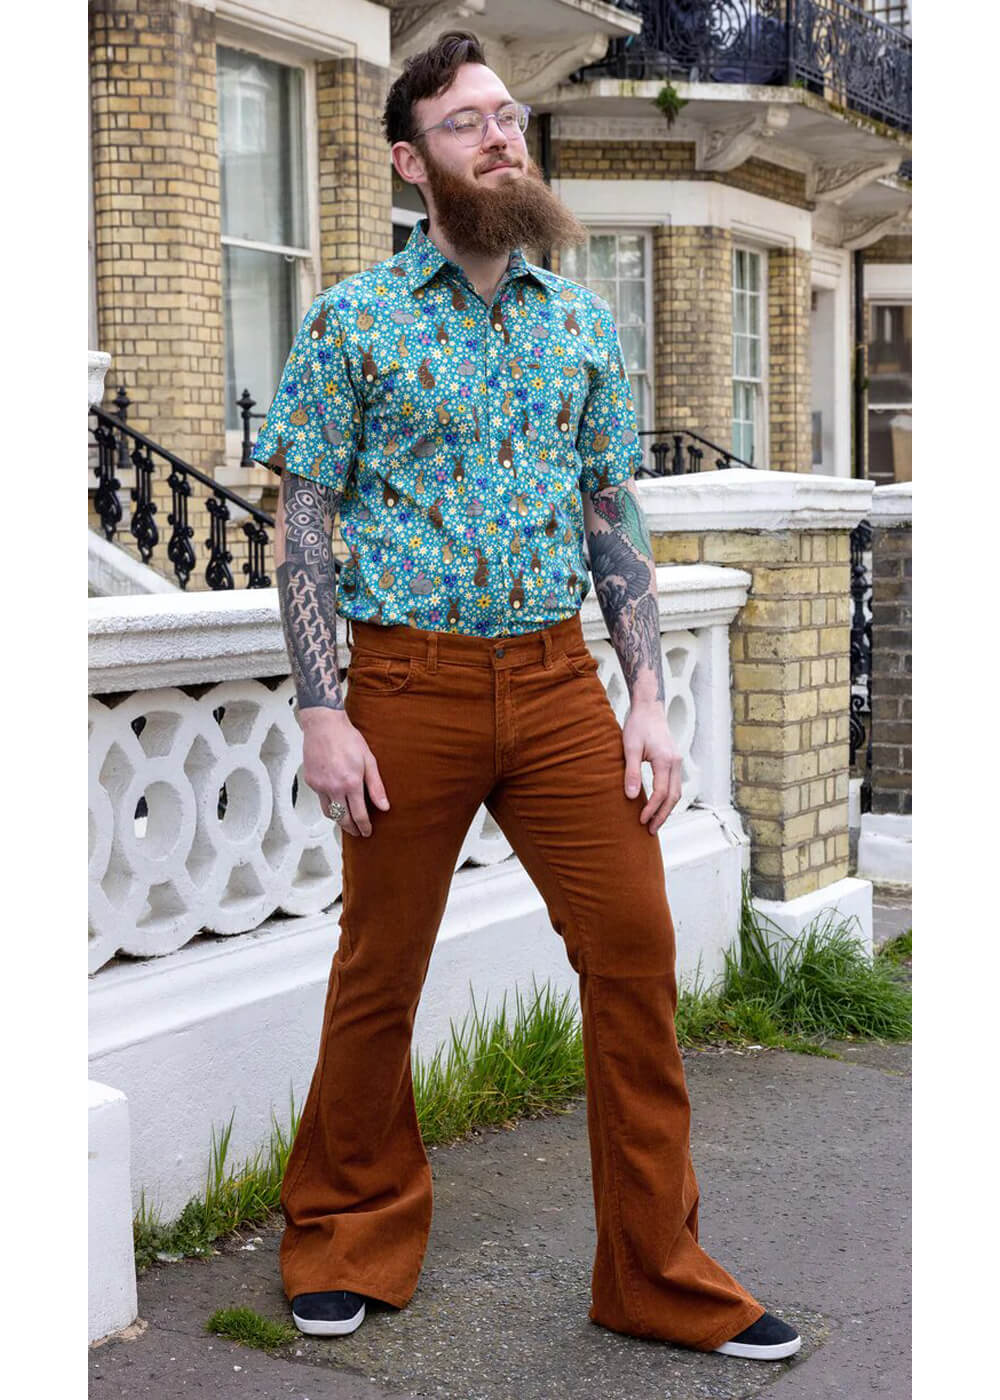 Fuzzdandy Mens Bootcut Flares Corduroy Pants Trousers Tan Brown Beige 36  Waist x 32 Regular Leg  Amazoncouk Fashion